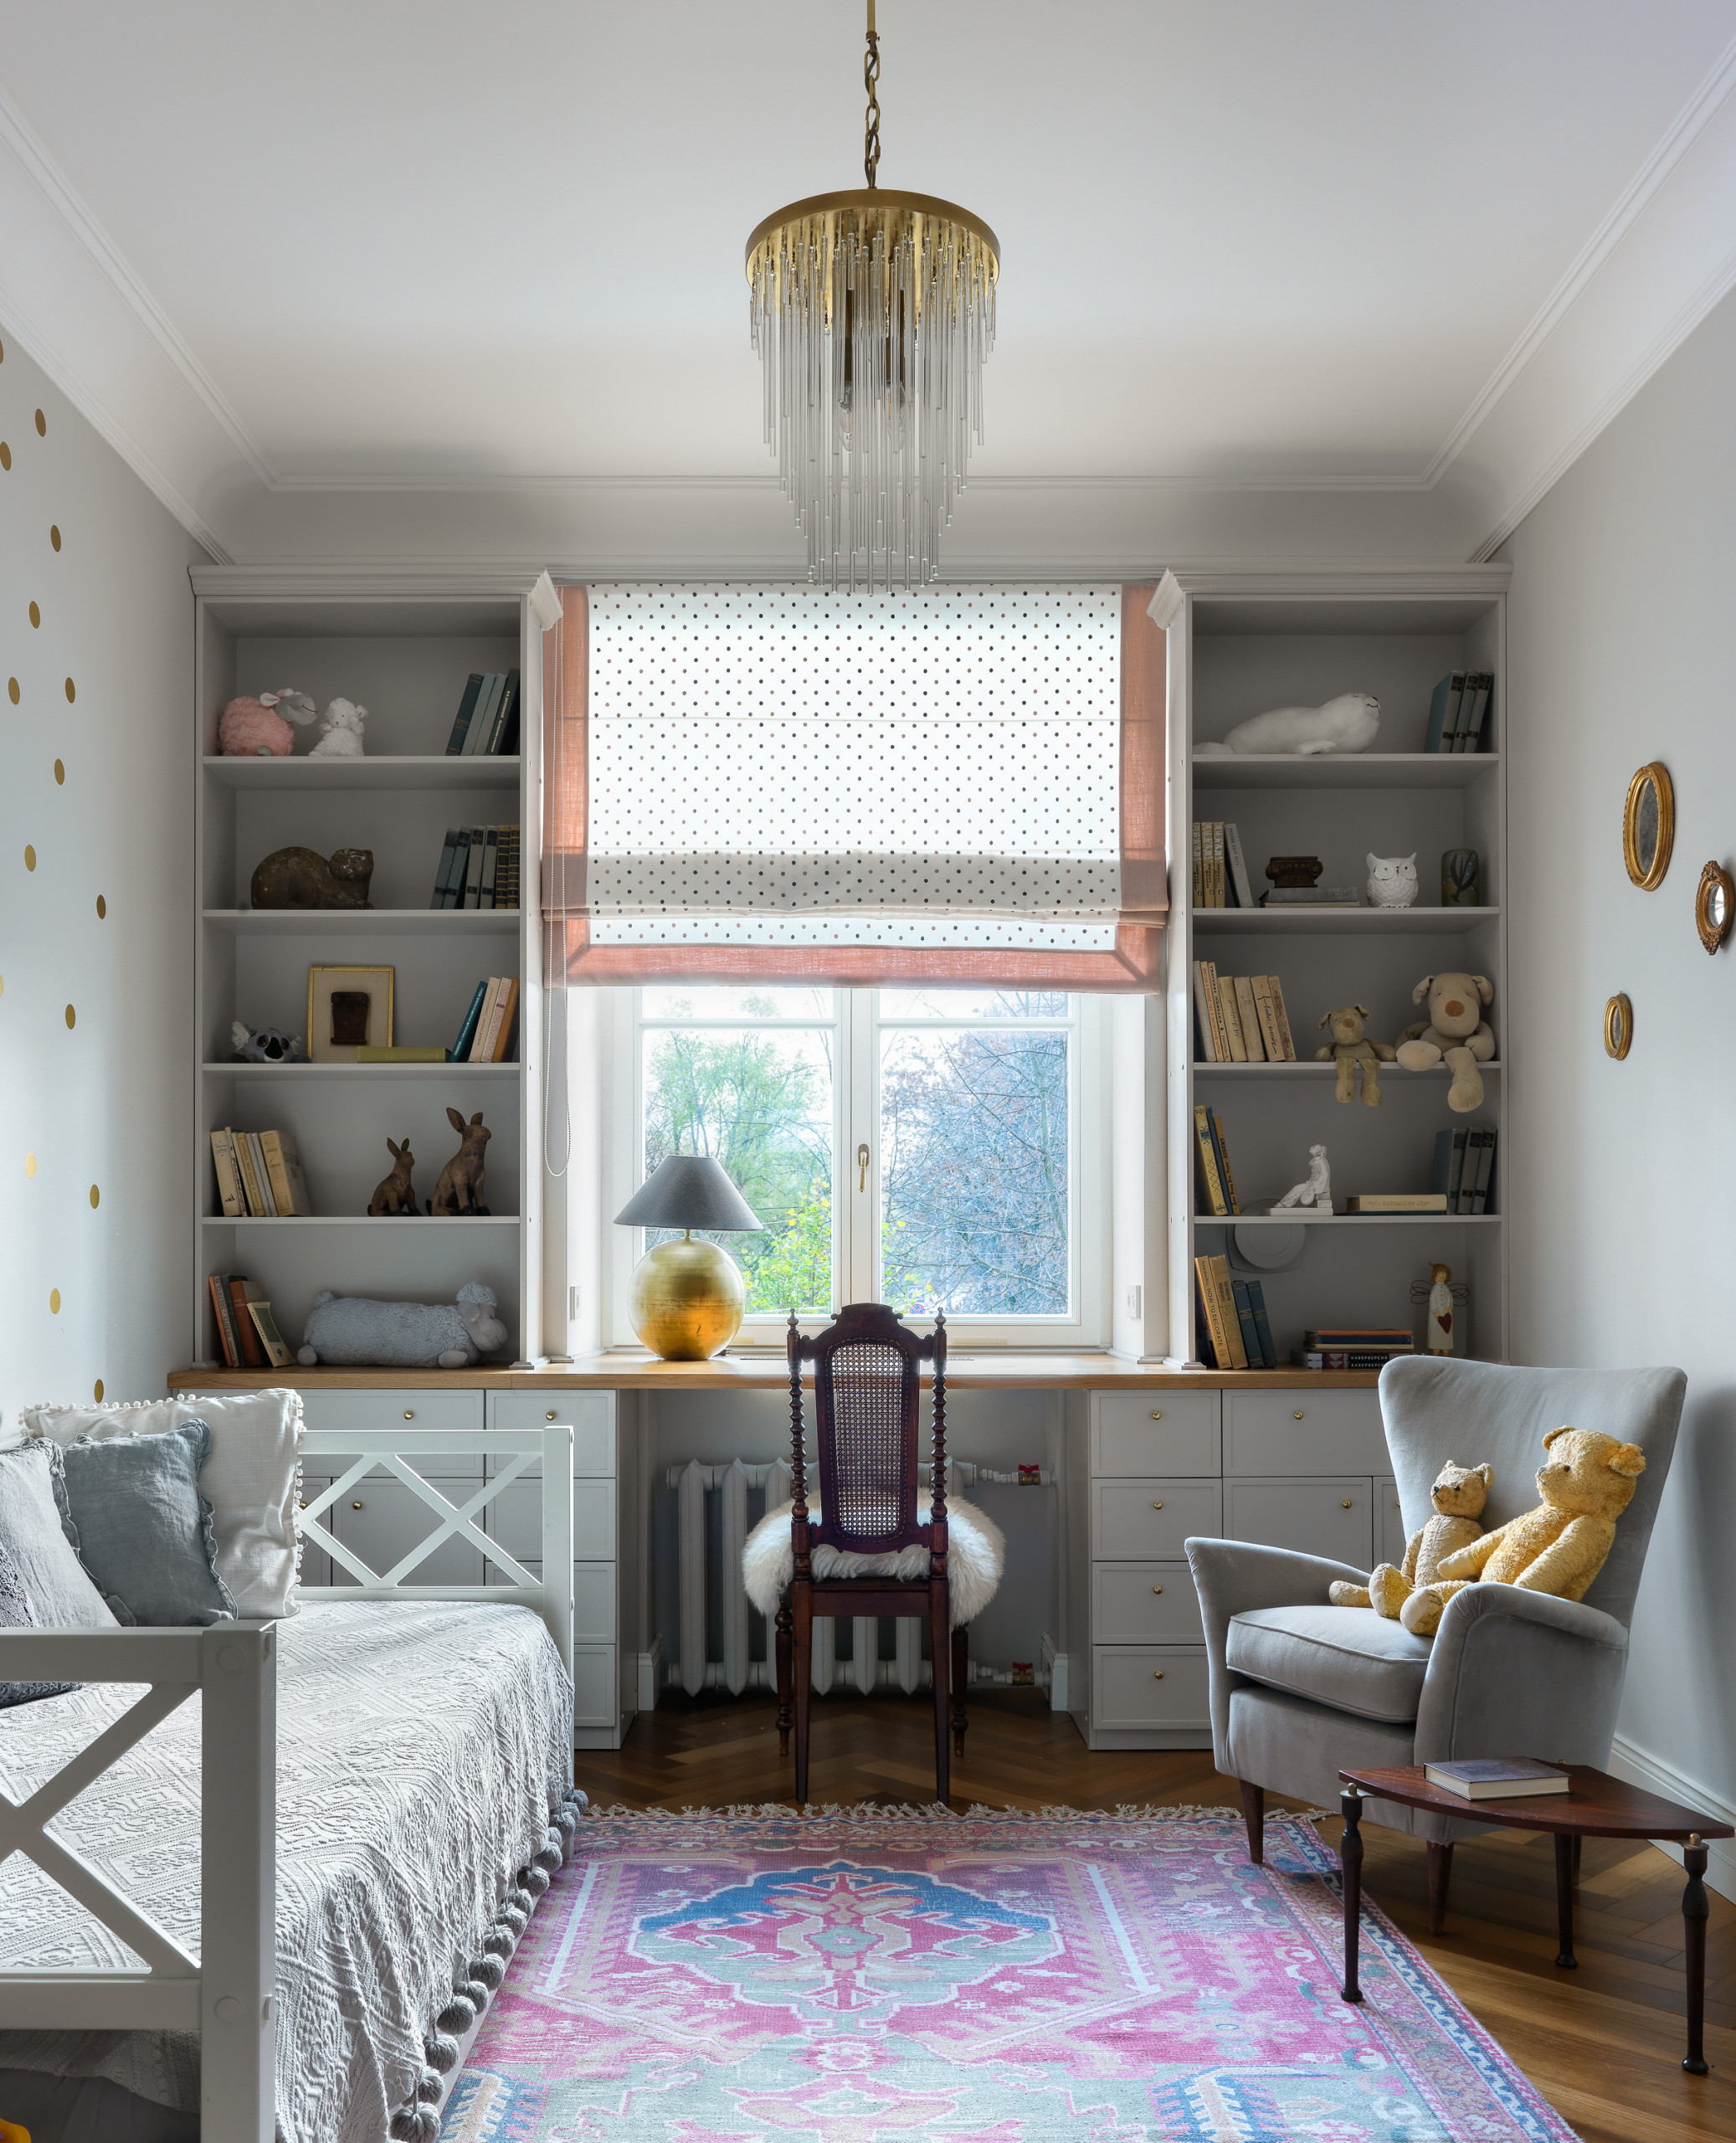 Планировка: Как обустроить узкую комнату с одним окном идеи для дома,интерьер и дизайн